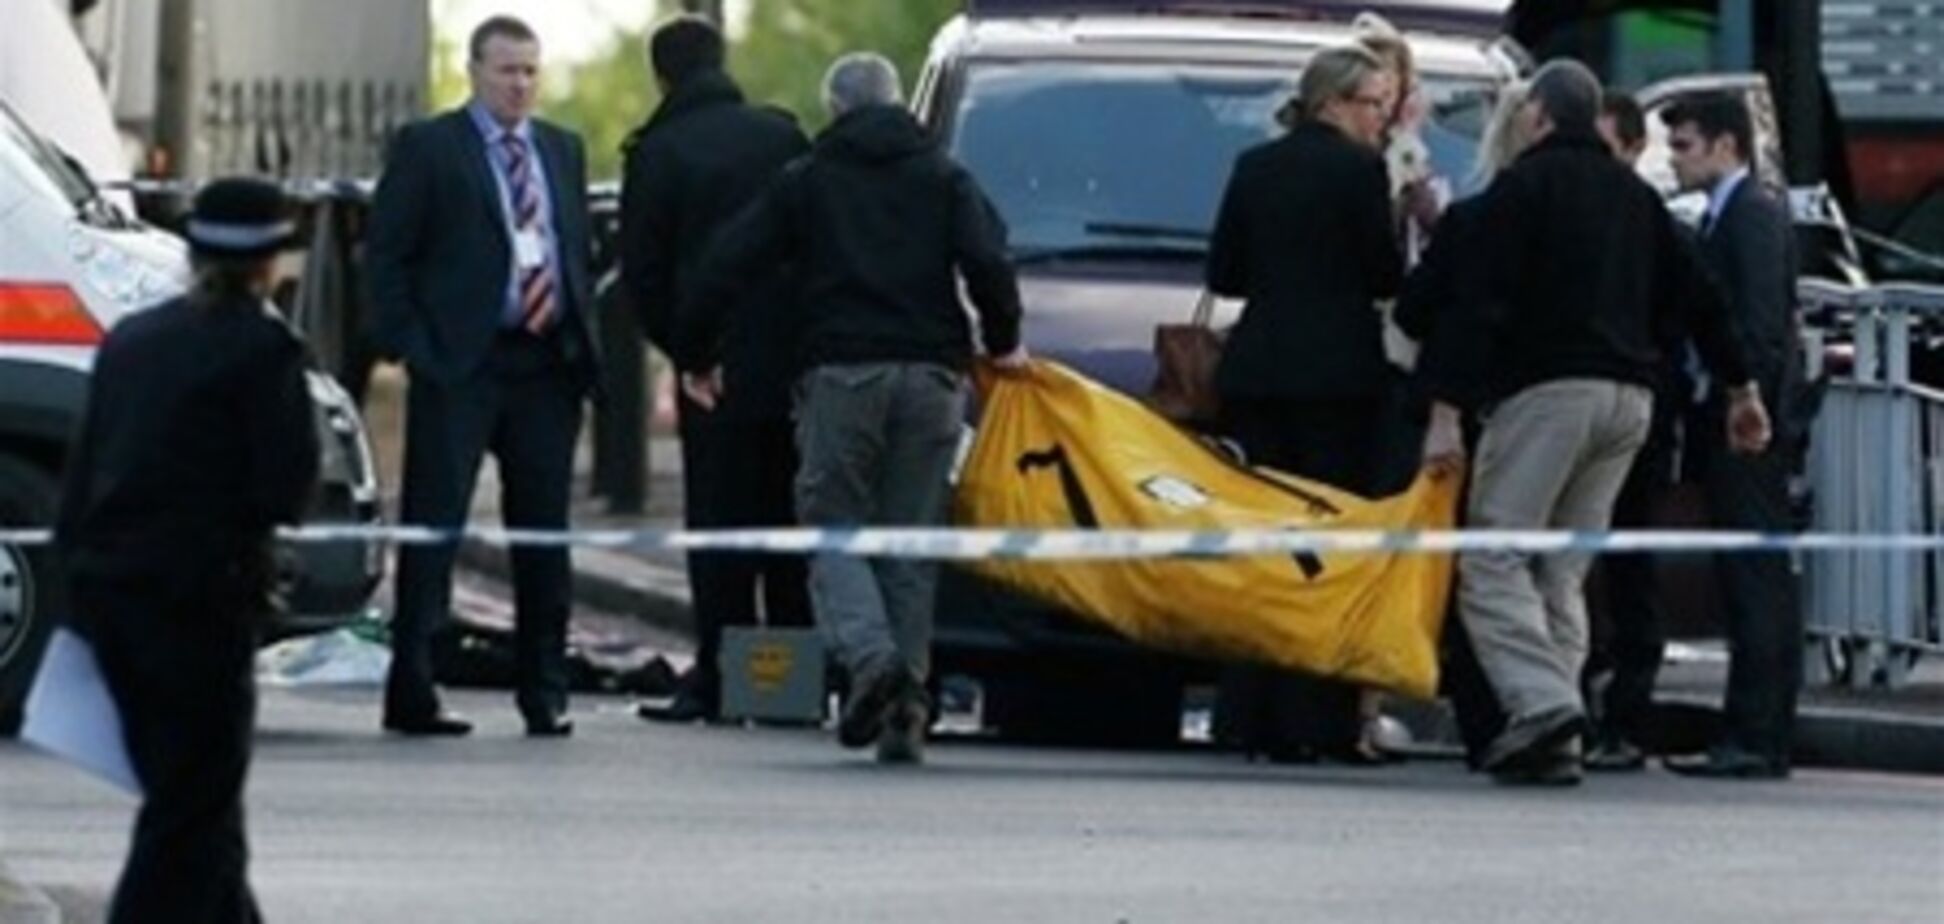 Лондонских террористов поддерживали другие экстремисты  - СМИ